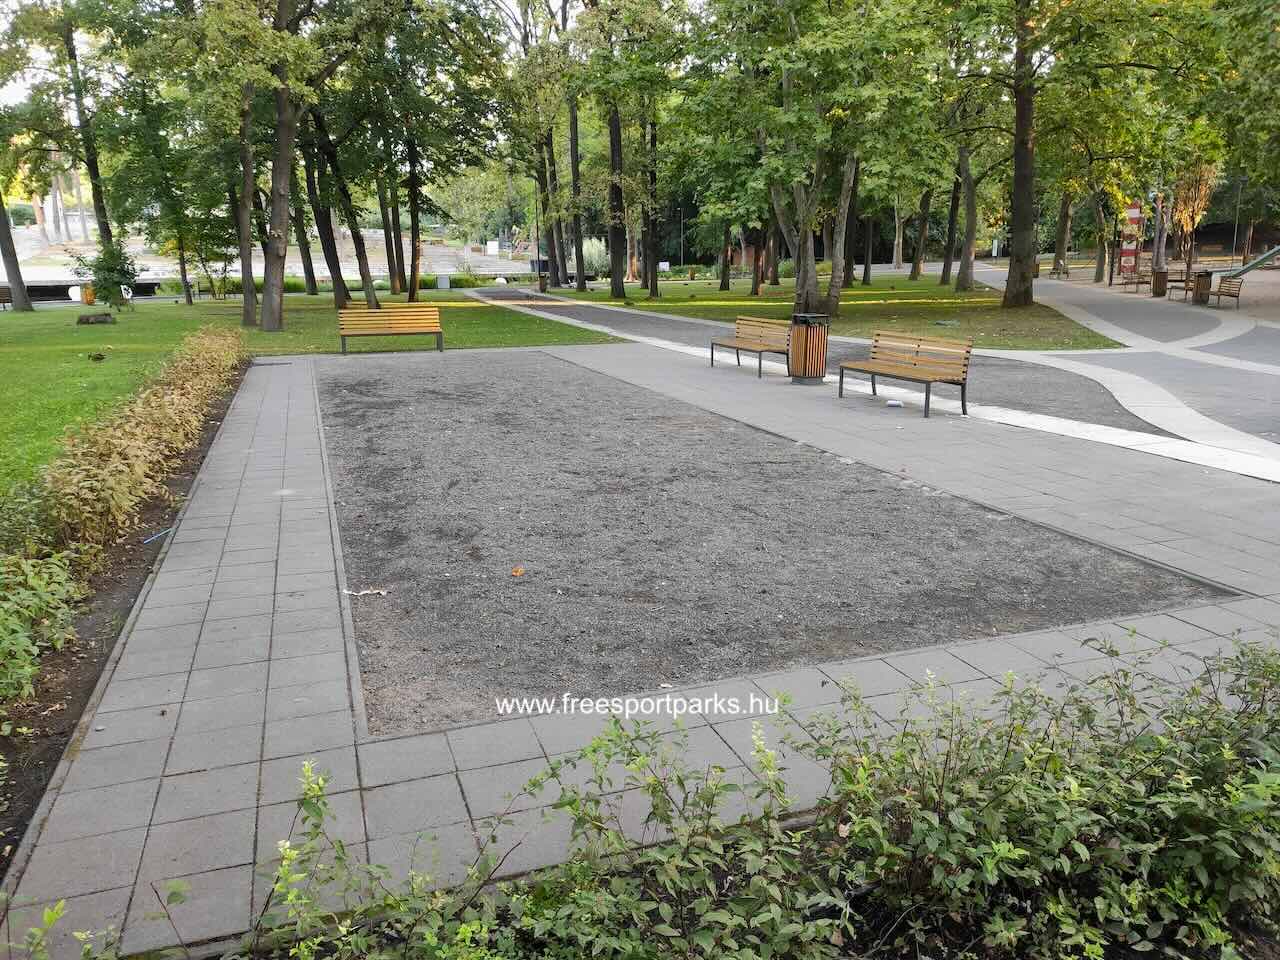 Petanque pálya padokkal, Nagyerdei szabadidőpark Debrecen - Free Sport Parks Térkép